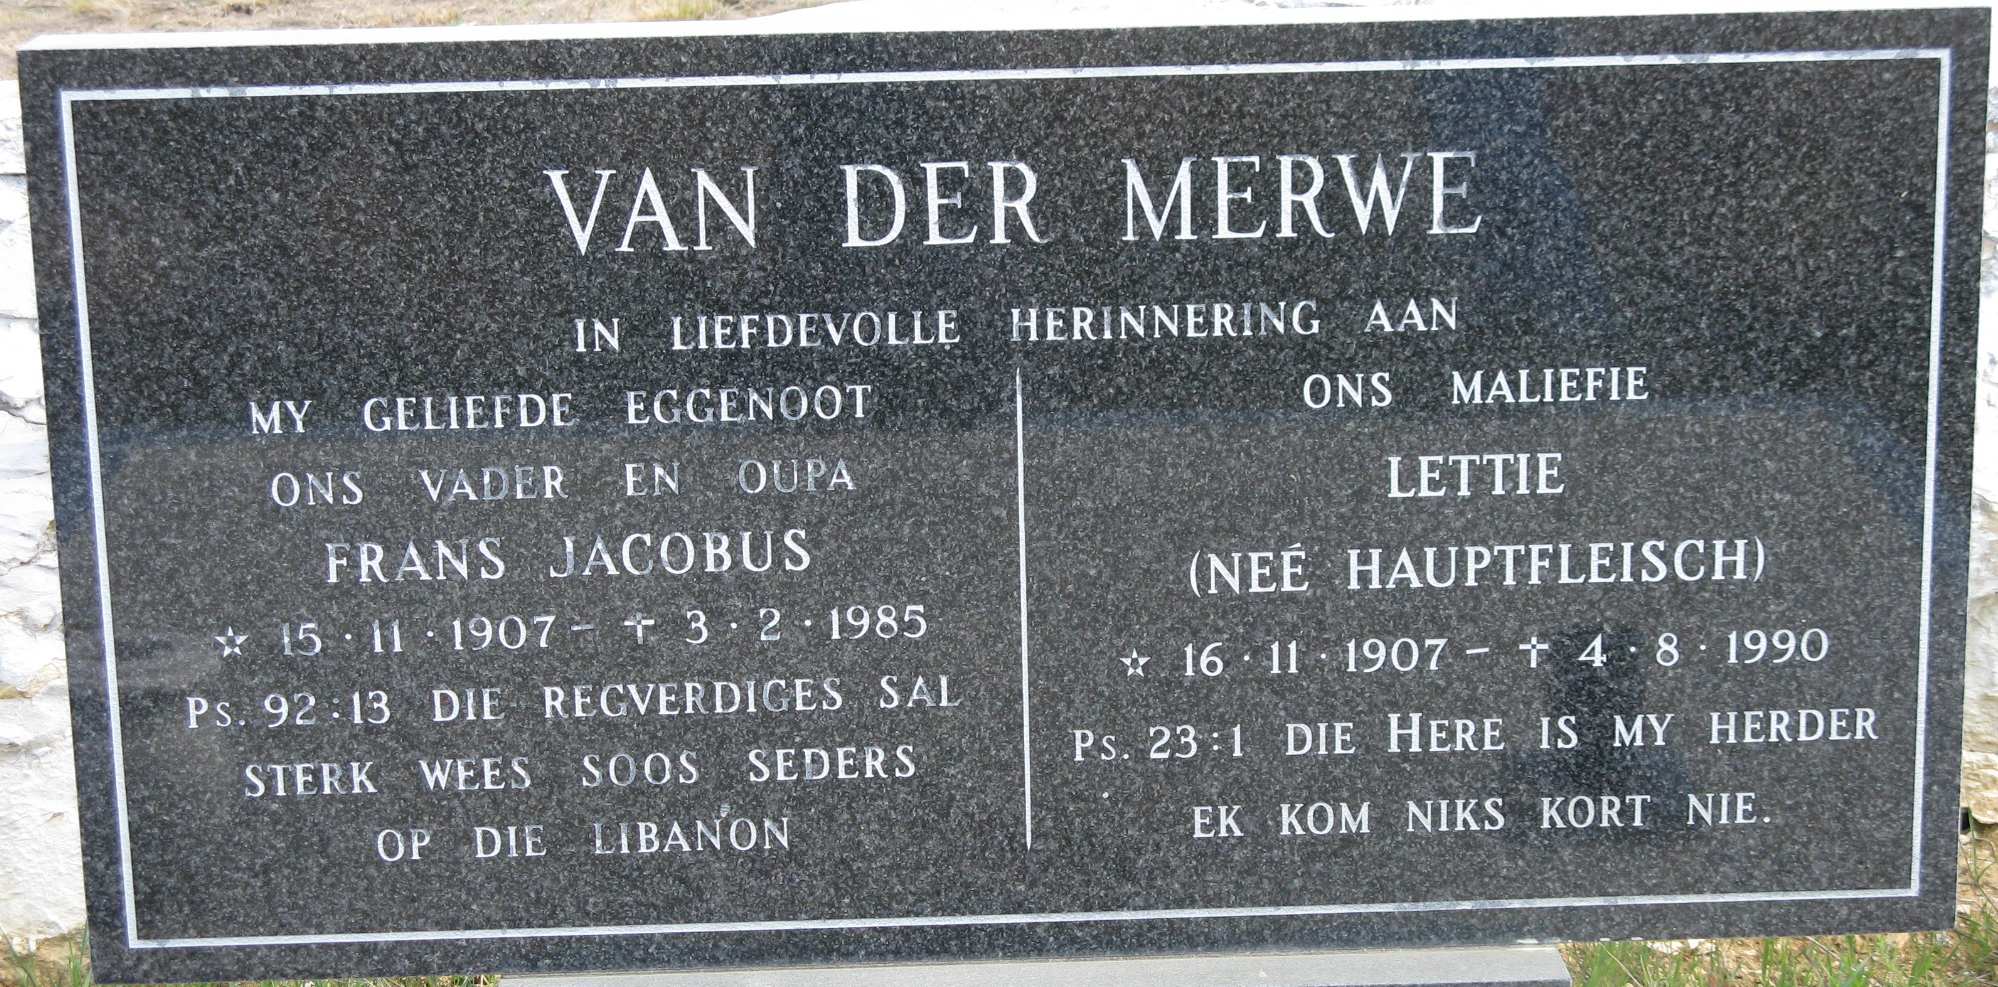 MERWE Frans Jacobus, van der 1907-1985 & Lettie HAUPTFLEISCH 1907-1990